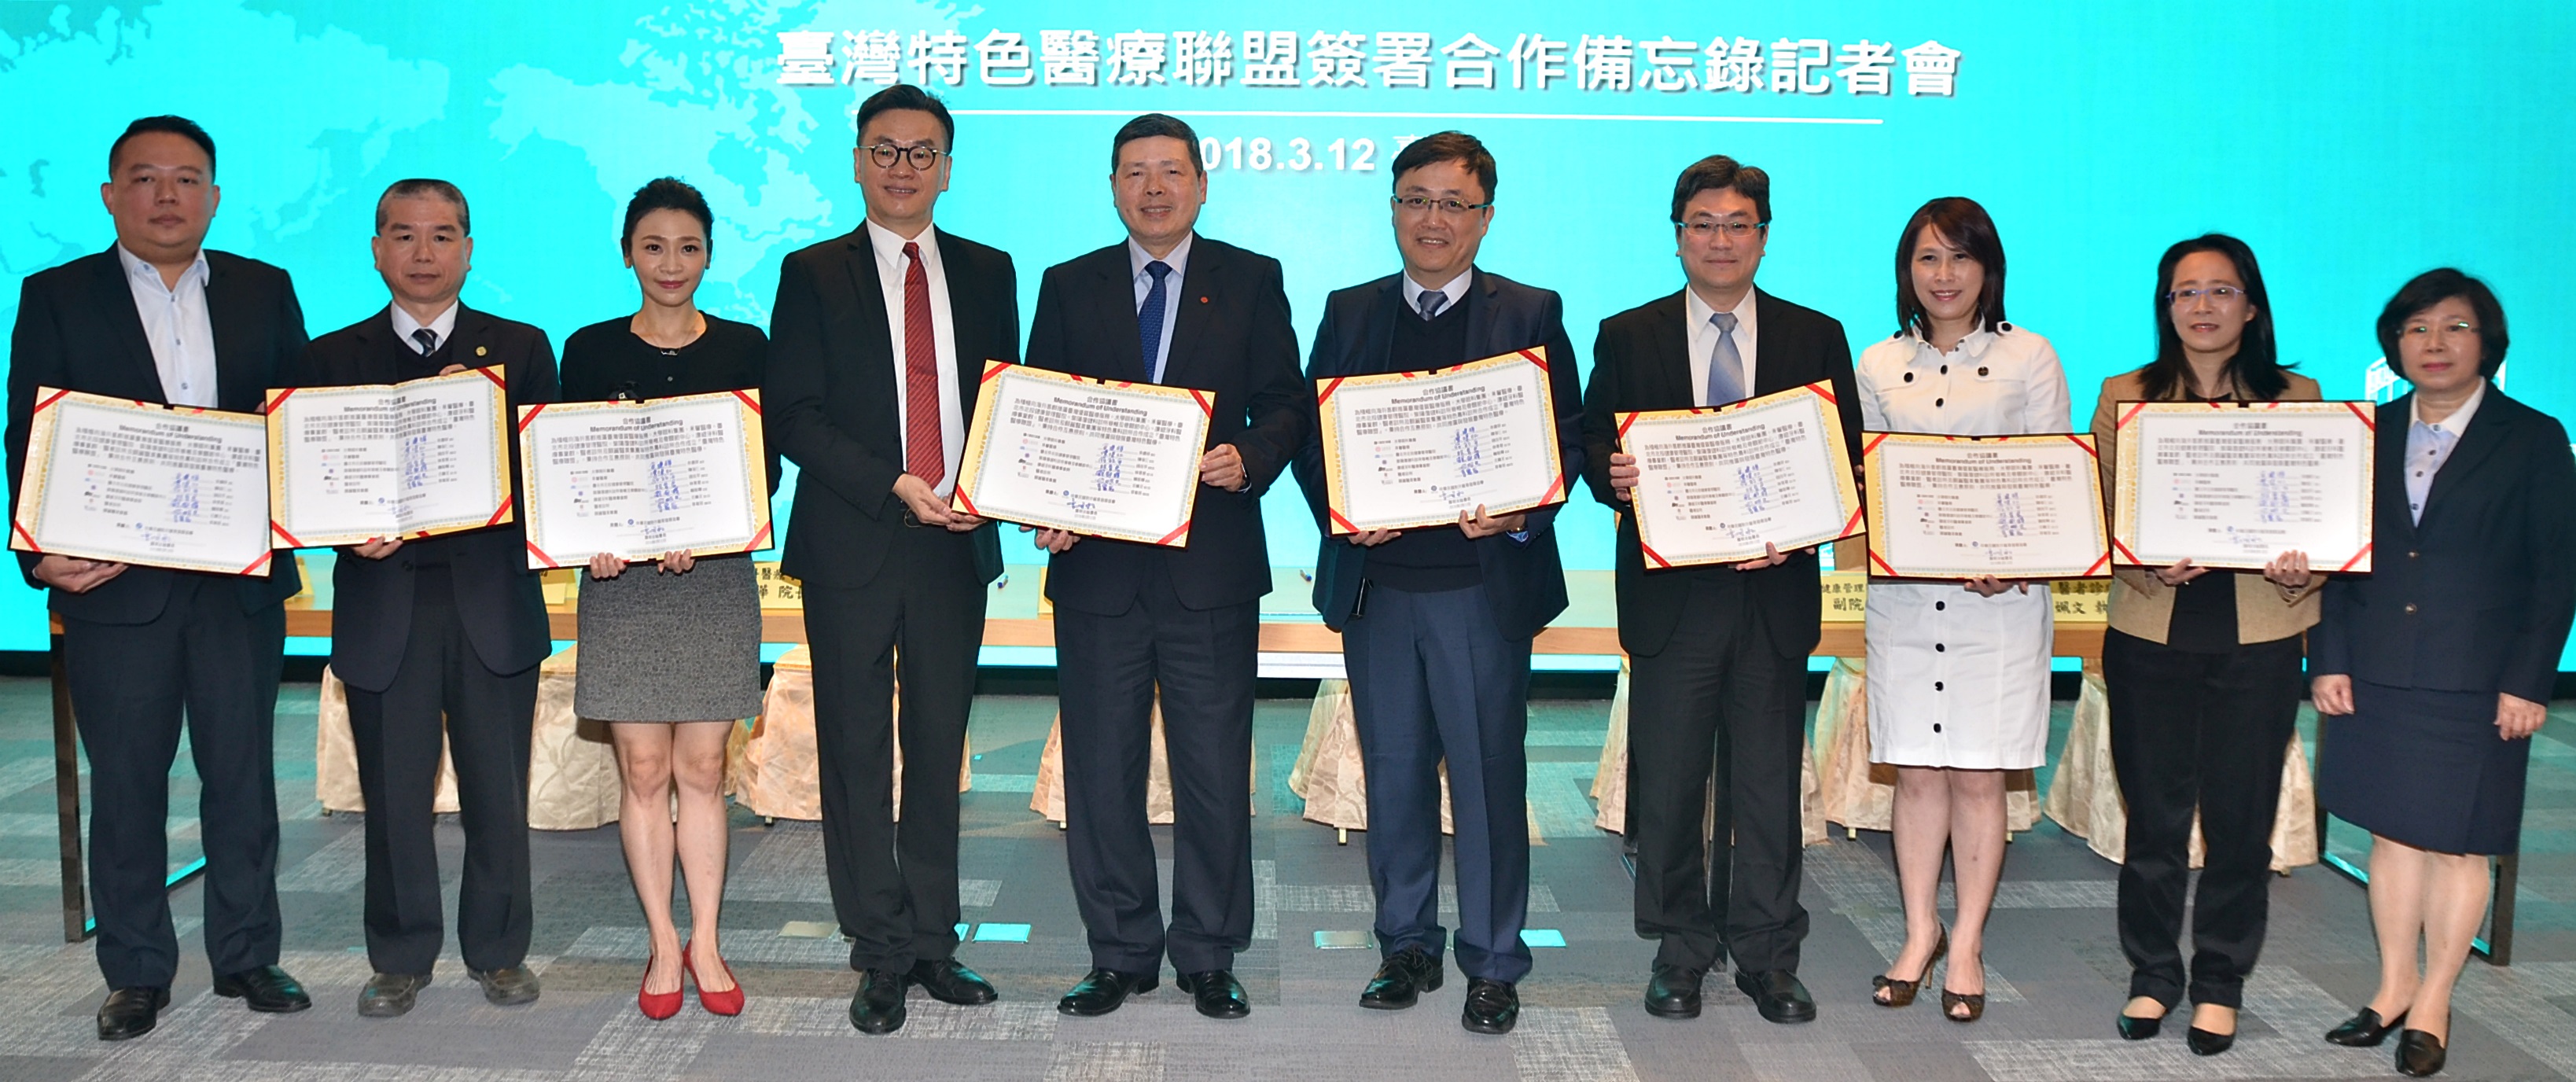 外贸协会见证「台湾特色医疗联盟」成立合作开发国际客群